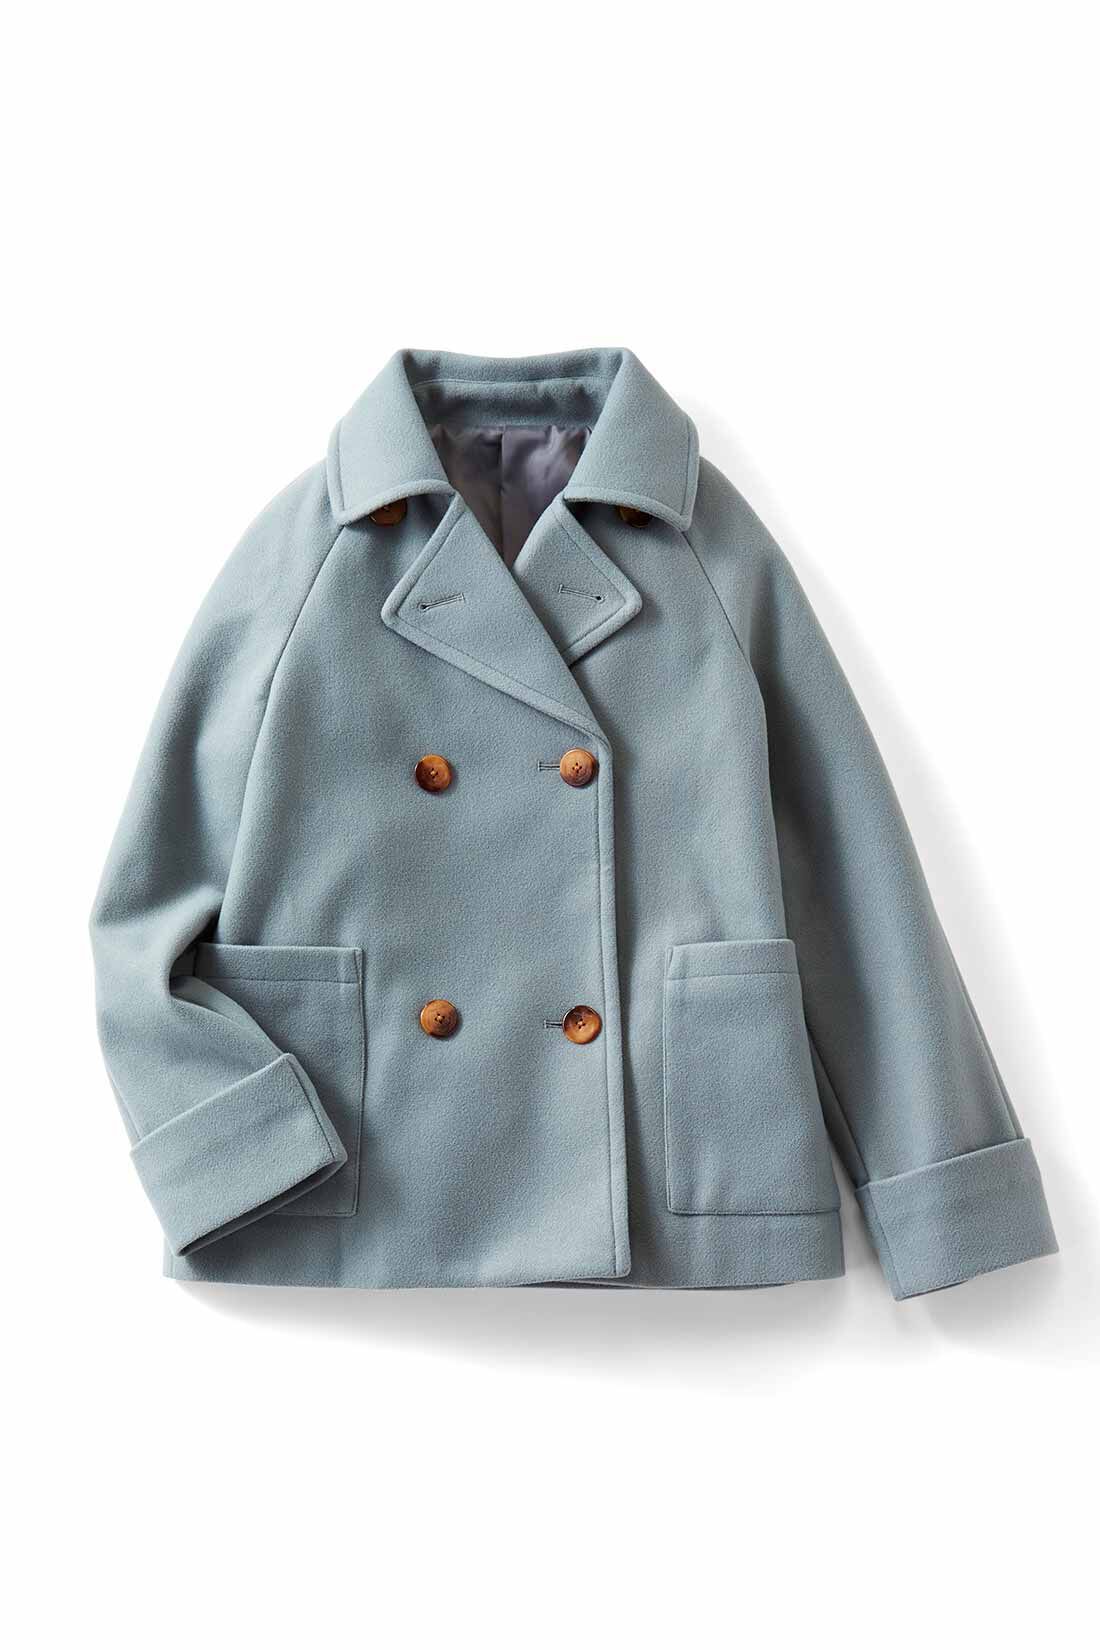 IEDIT[イディット]　着映えカラーのショート丈こなれPコート〈ブルーグリーン〉|ブルーグリーン